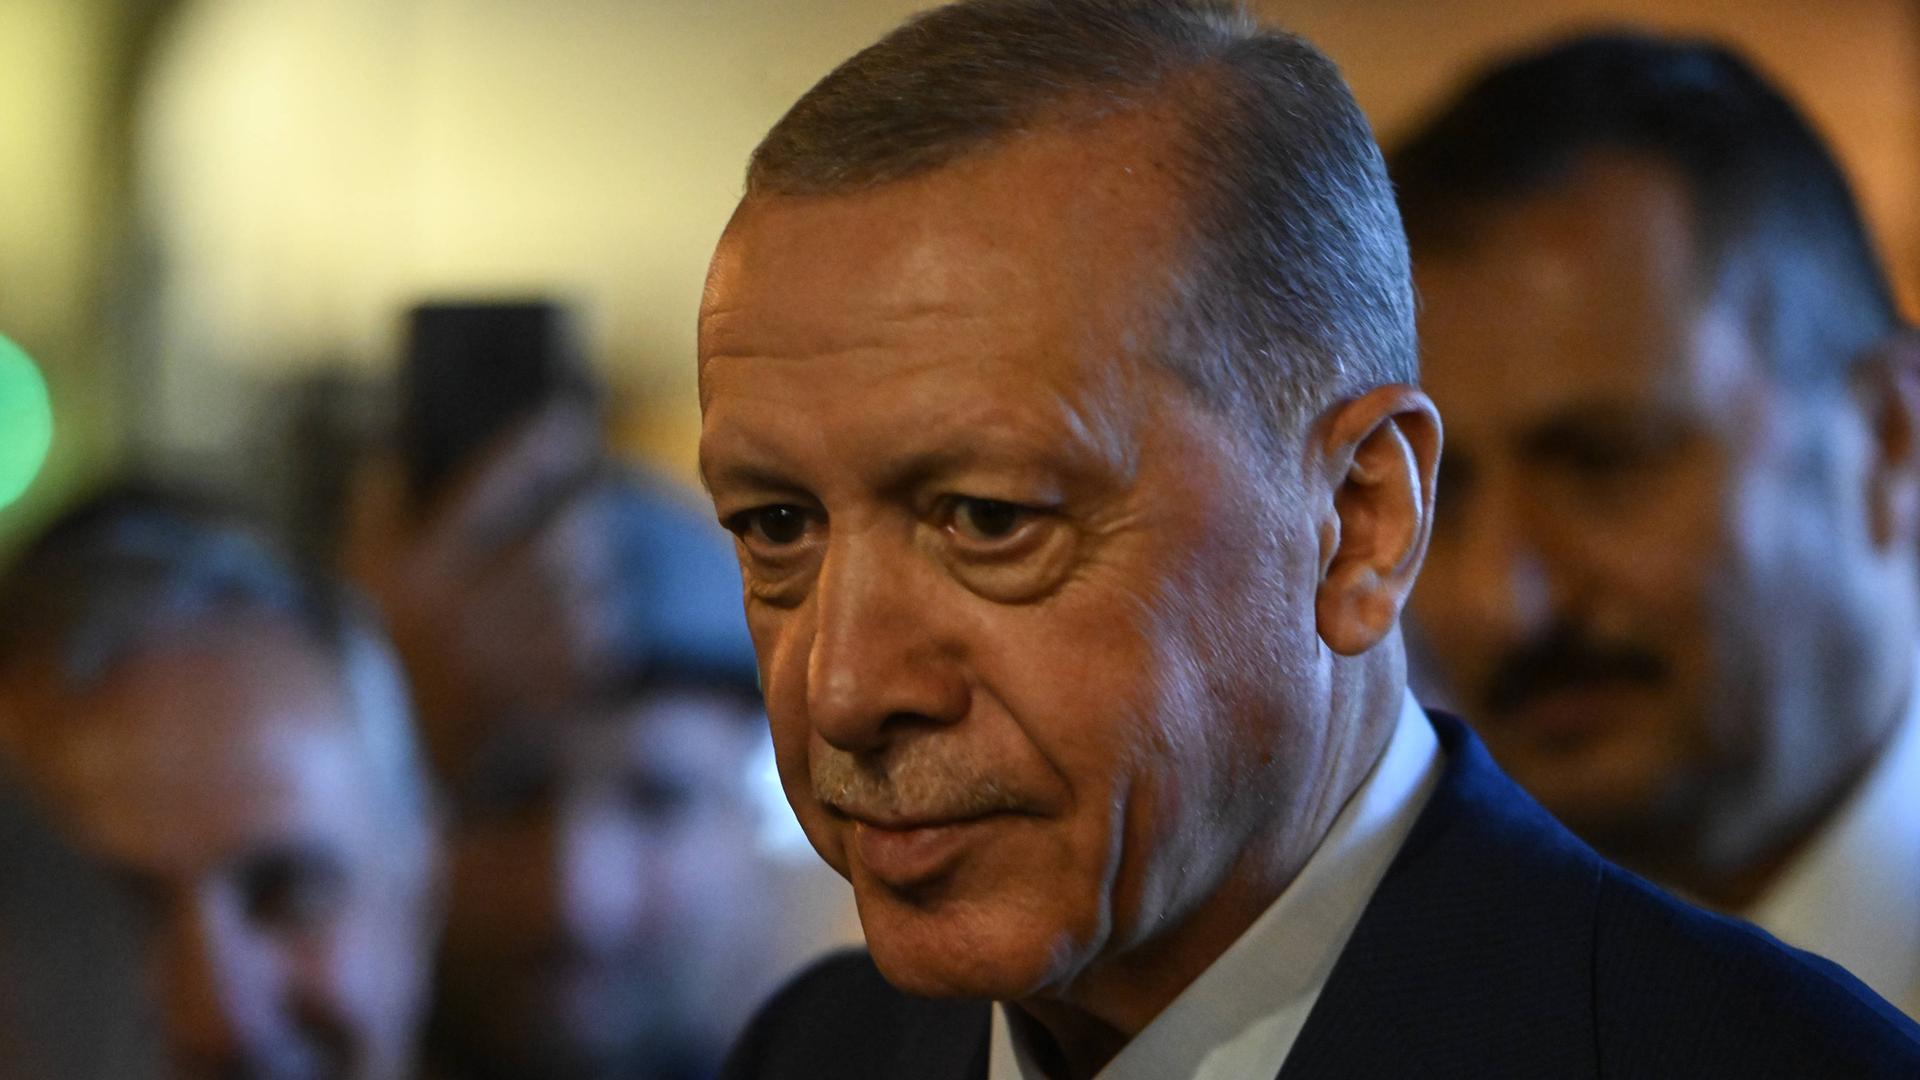 Der türkische Präsident Recep Tayyip Erdogan im Porträt.